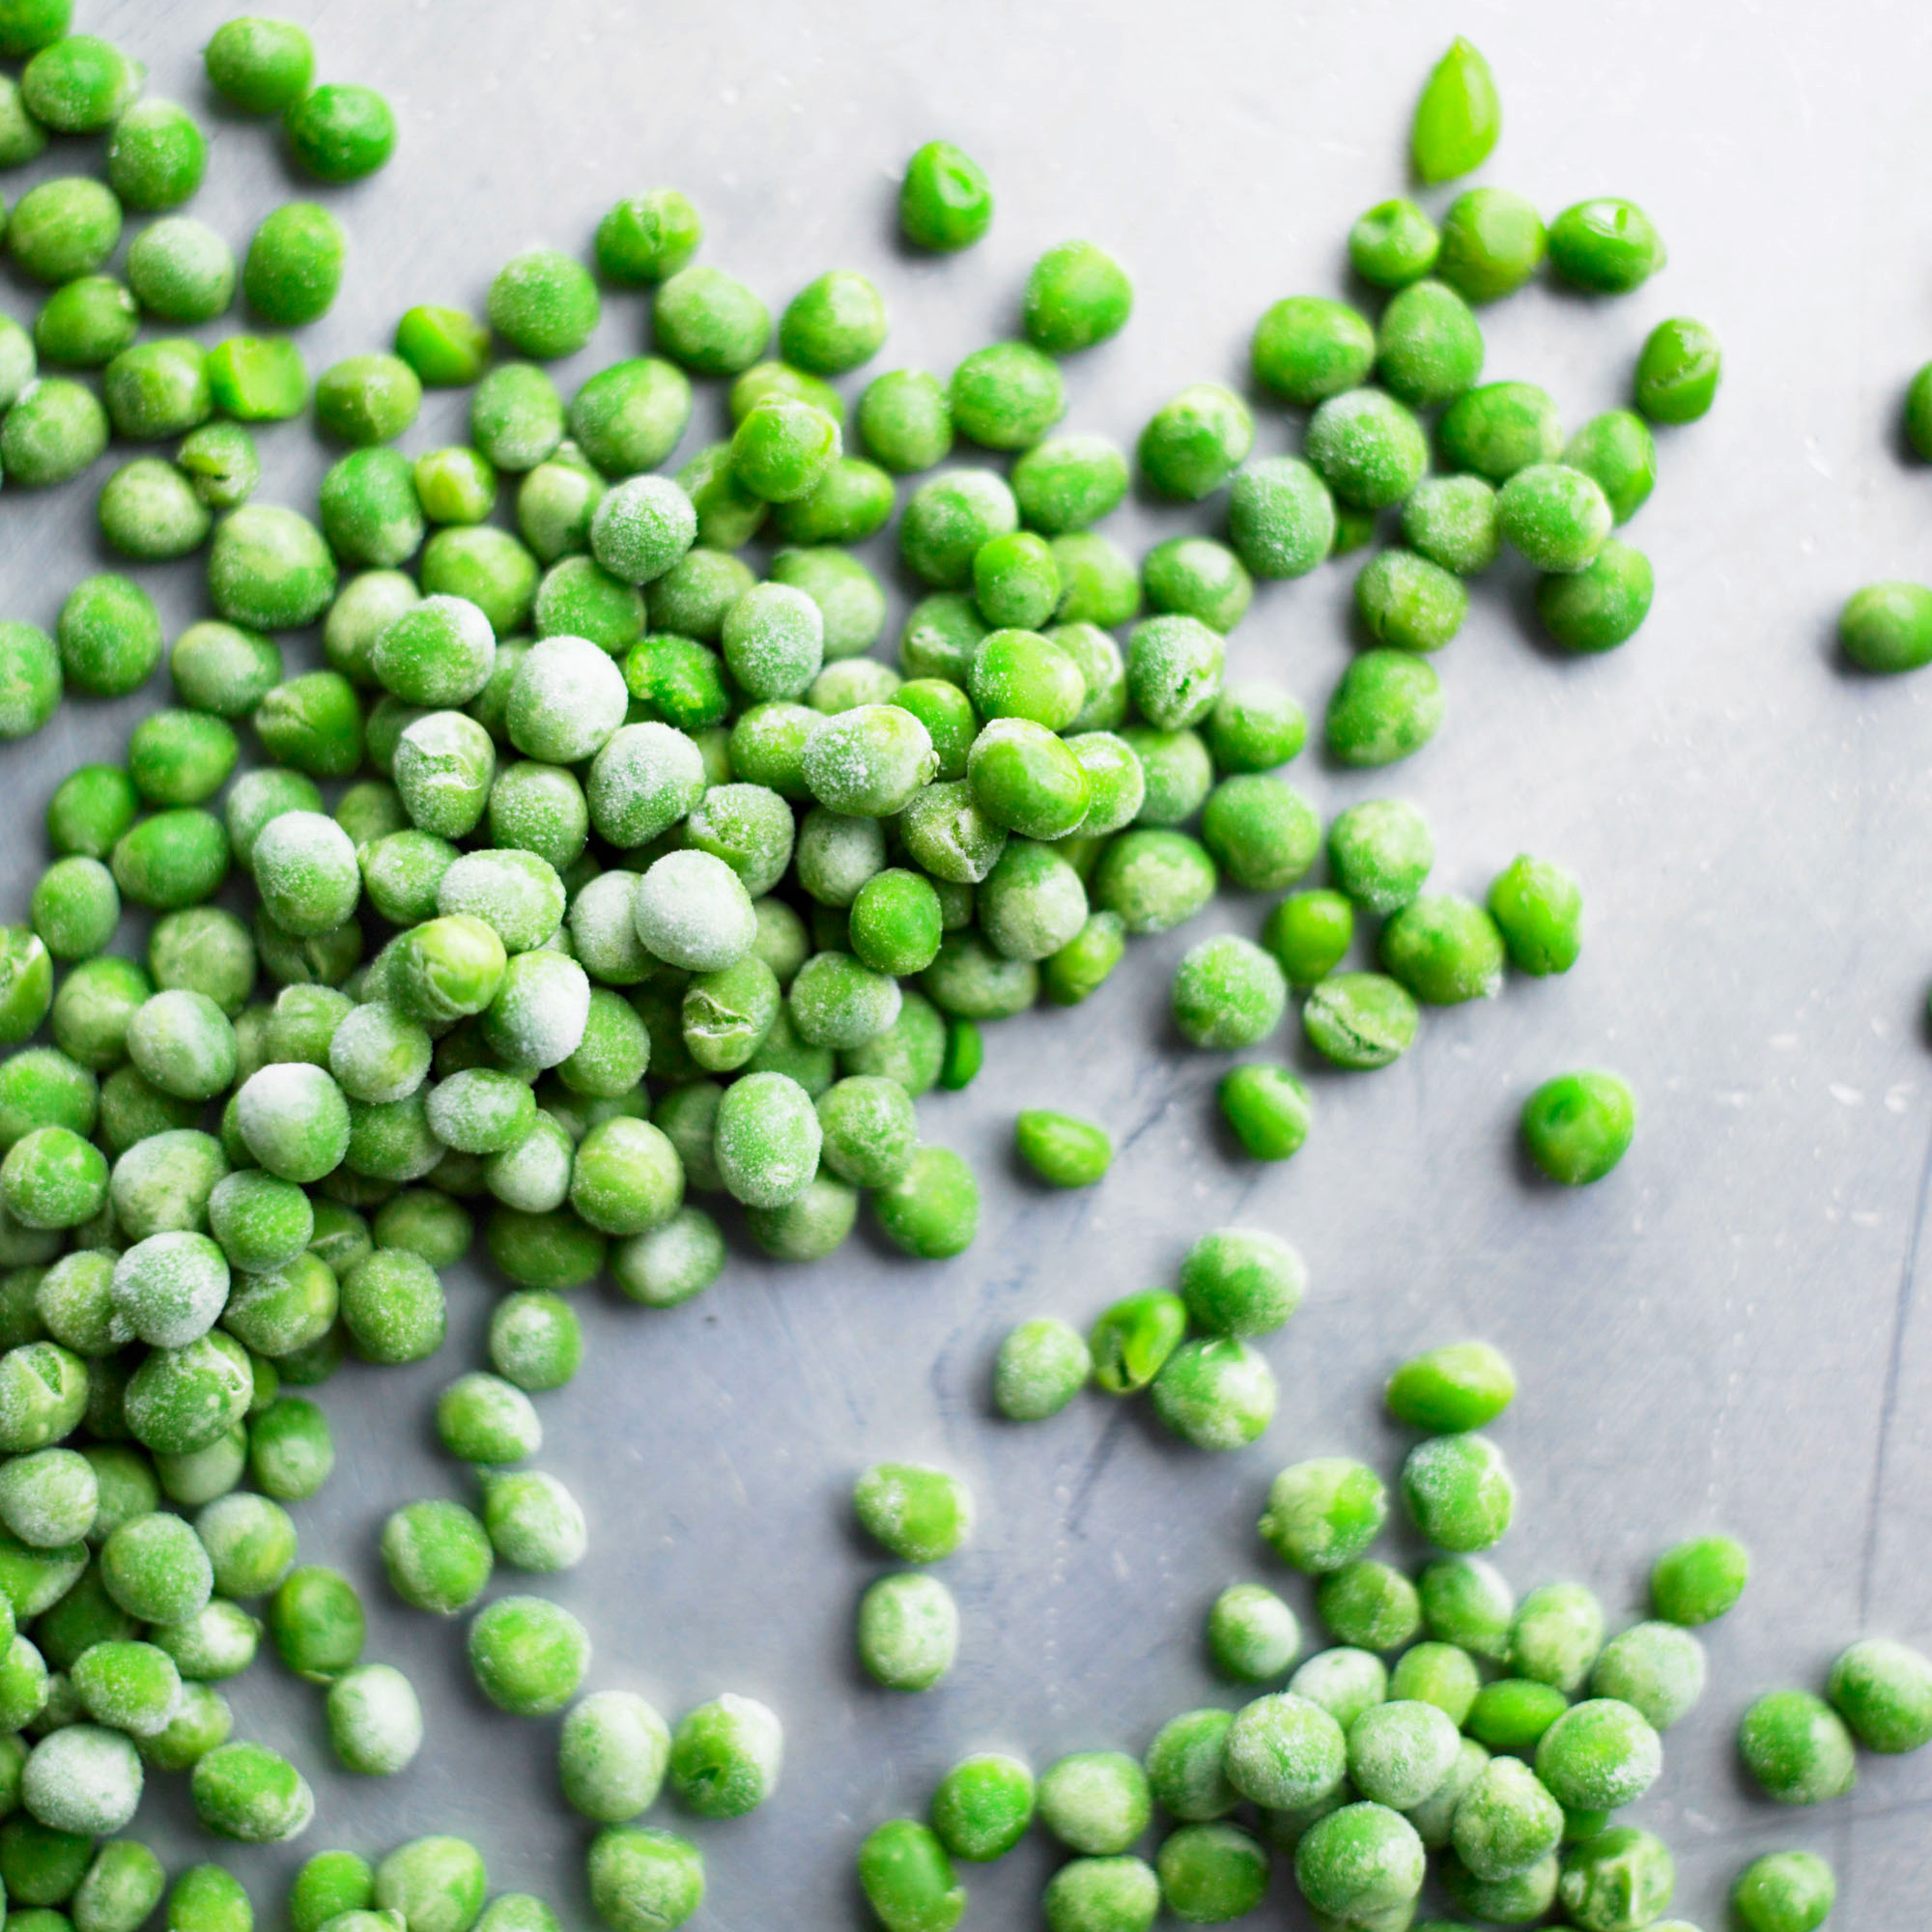 frozen peas on gray surface